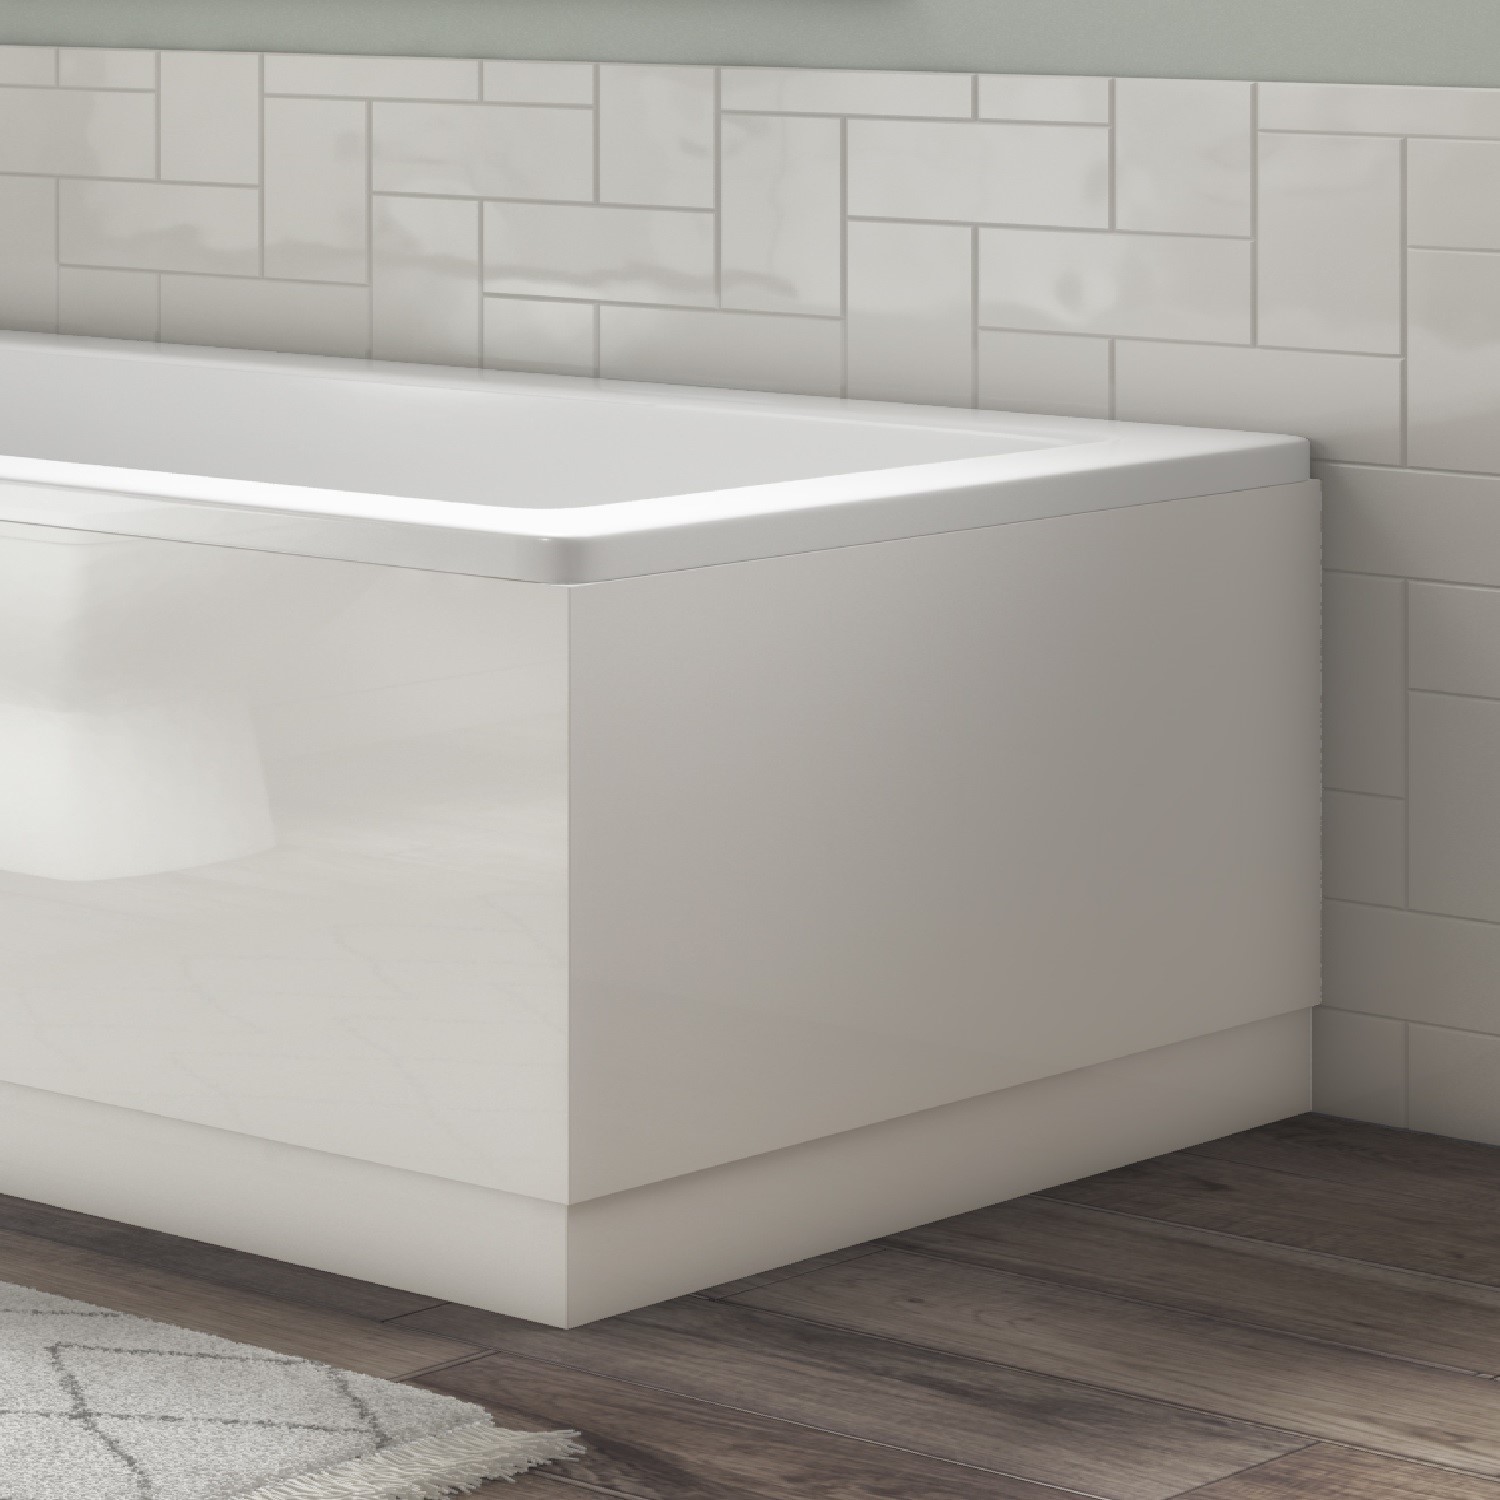 700mm White Gloss Bath End Panel - Ashford